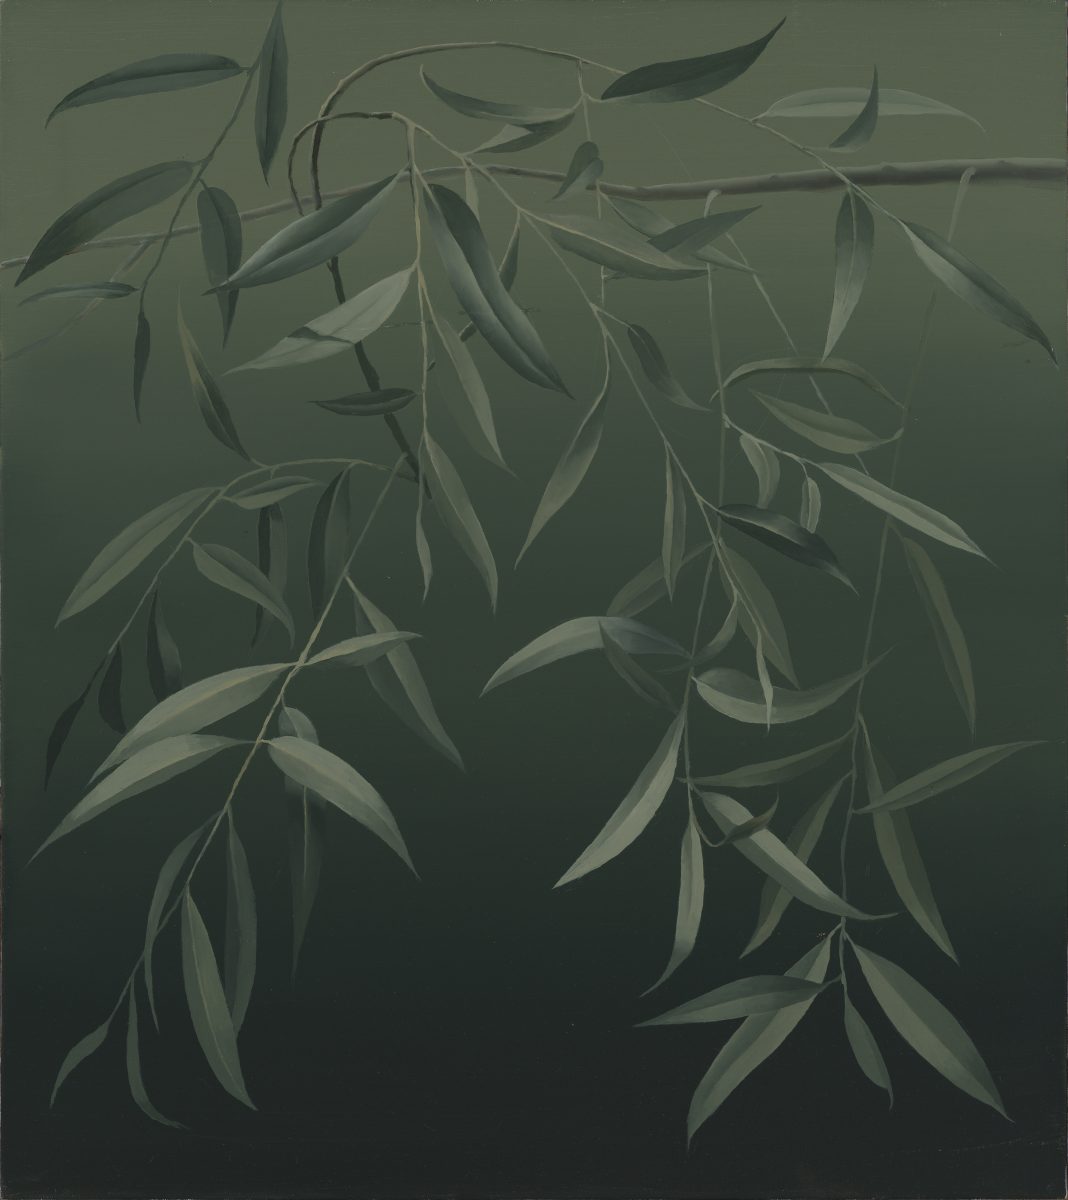 Mari Kurismaa. Silver Willow. 90 x 80 cm. Oil on canvas, 2020